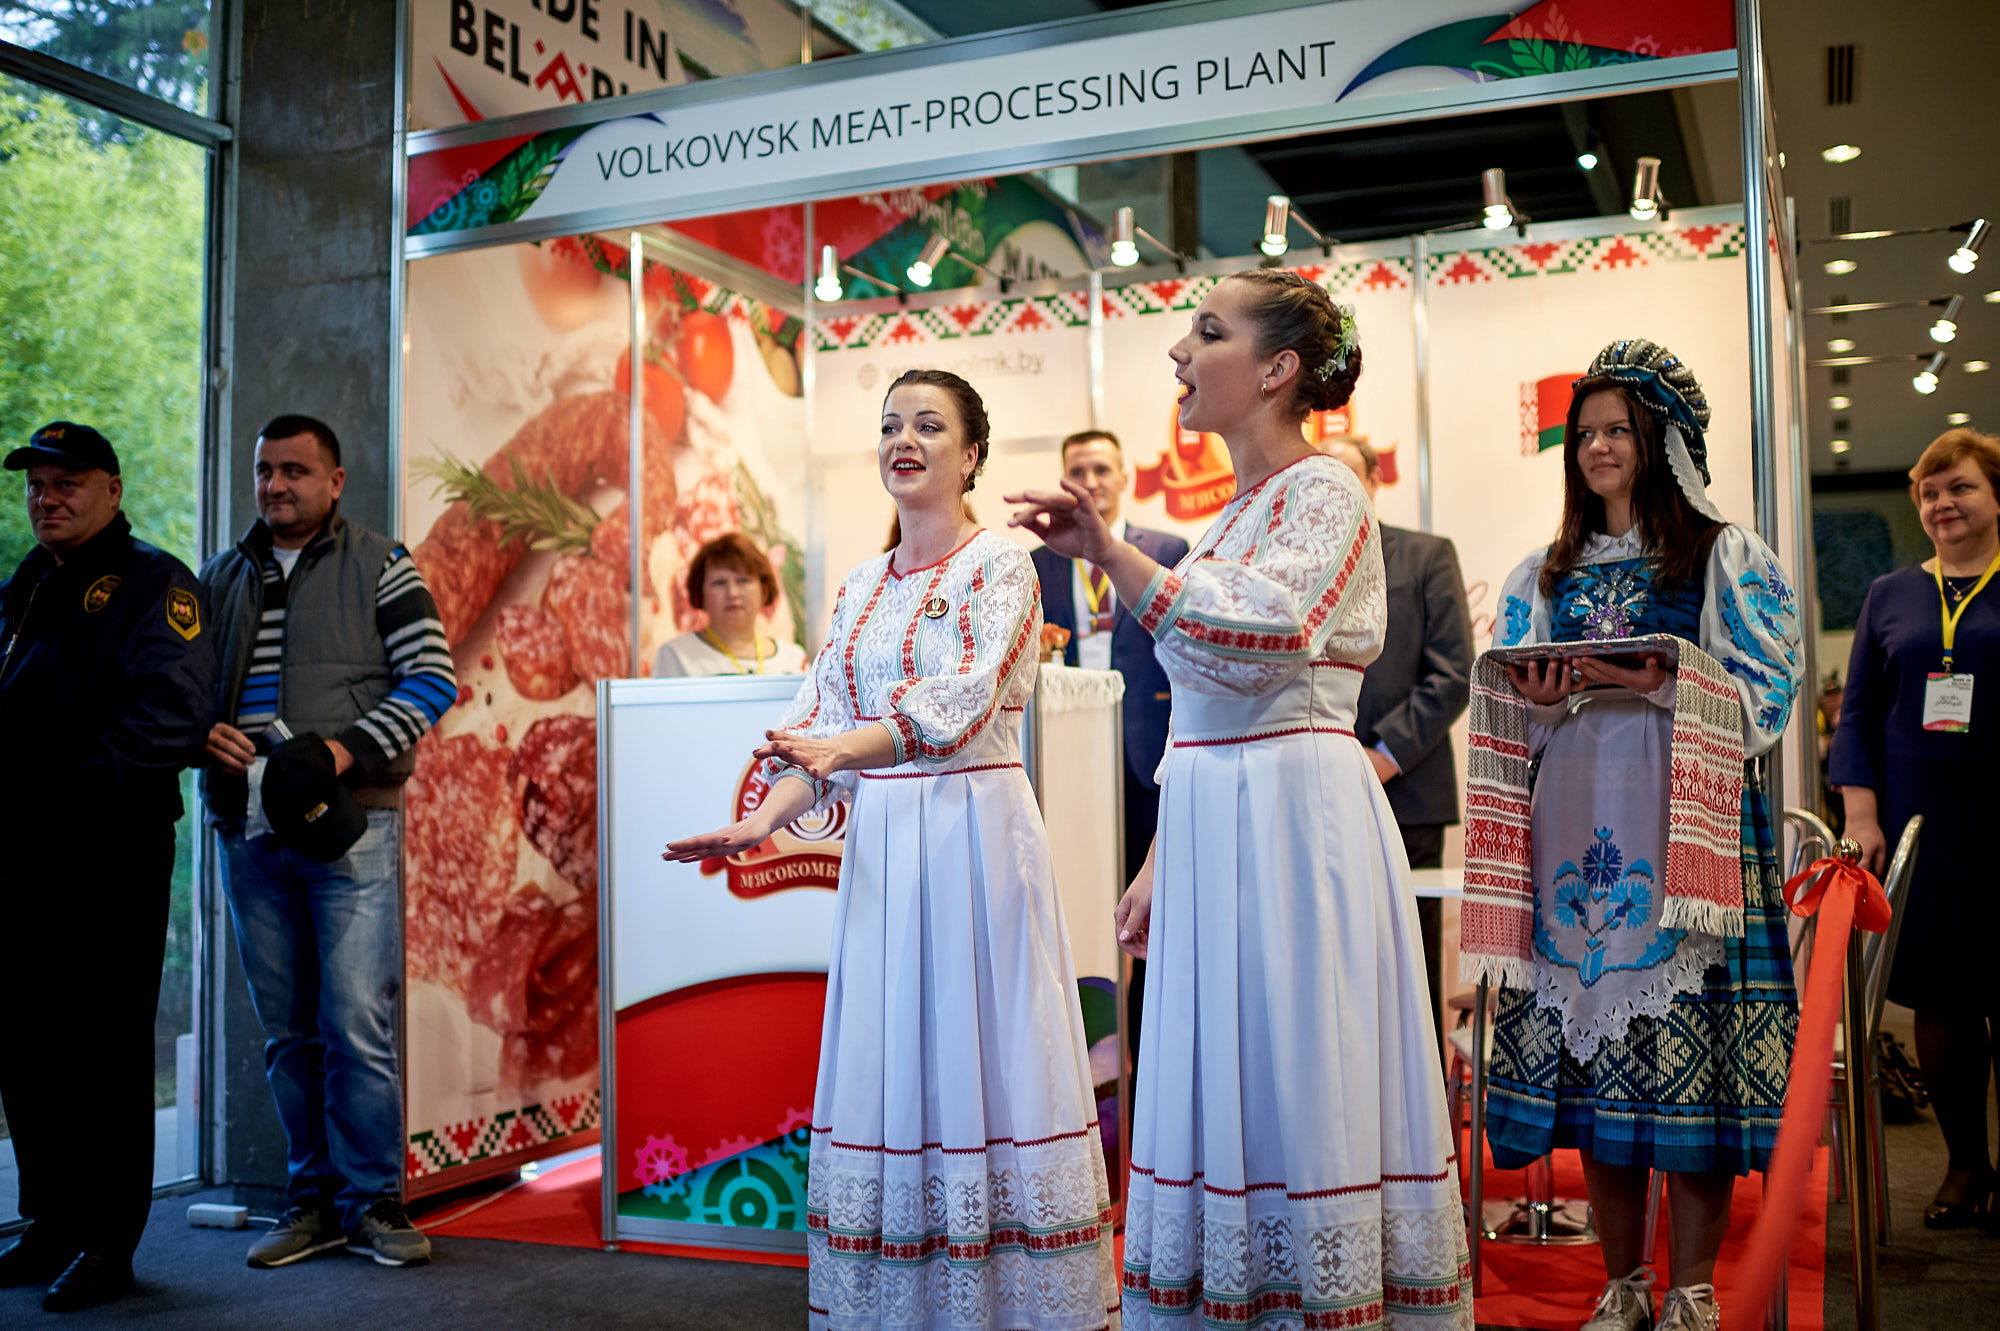 20-23 მარტს საქართველო ბელარუსის მწარმოებელთა გამოფენა Made in Belarus-ს უმასპინძლებს